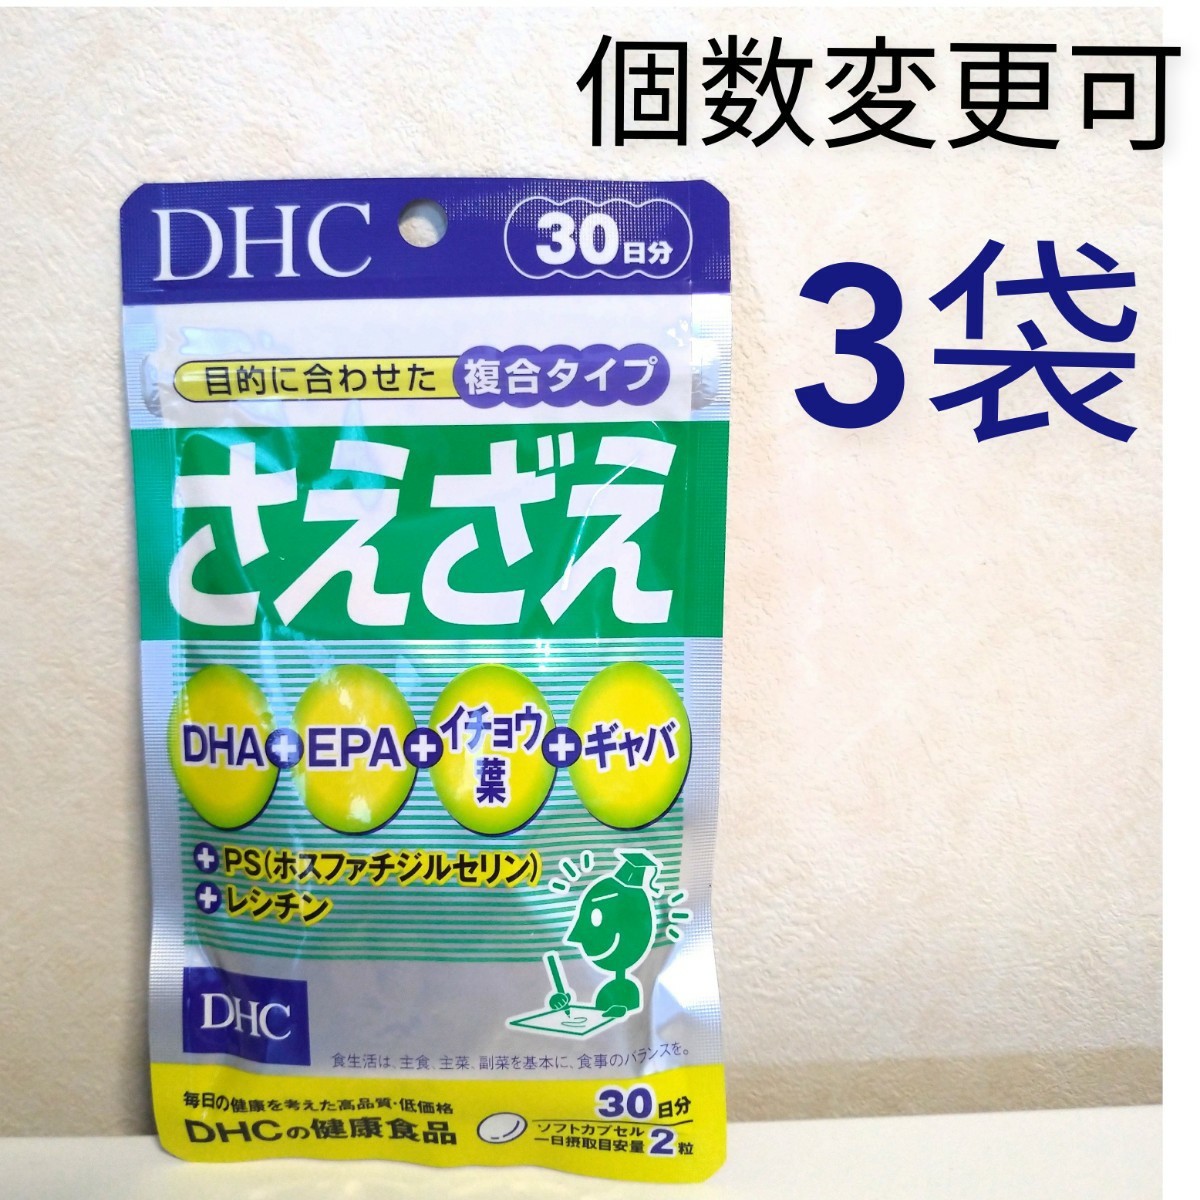 366円 【一部予約販売中】 DHC アスタキサンチン 30日分 送料無料